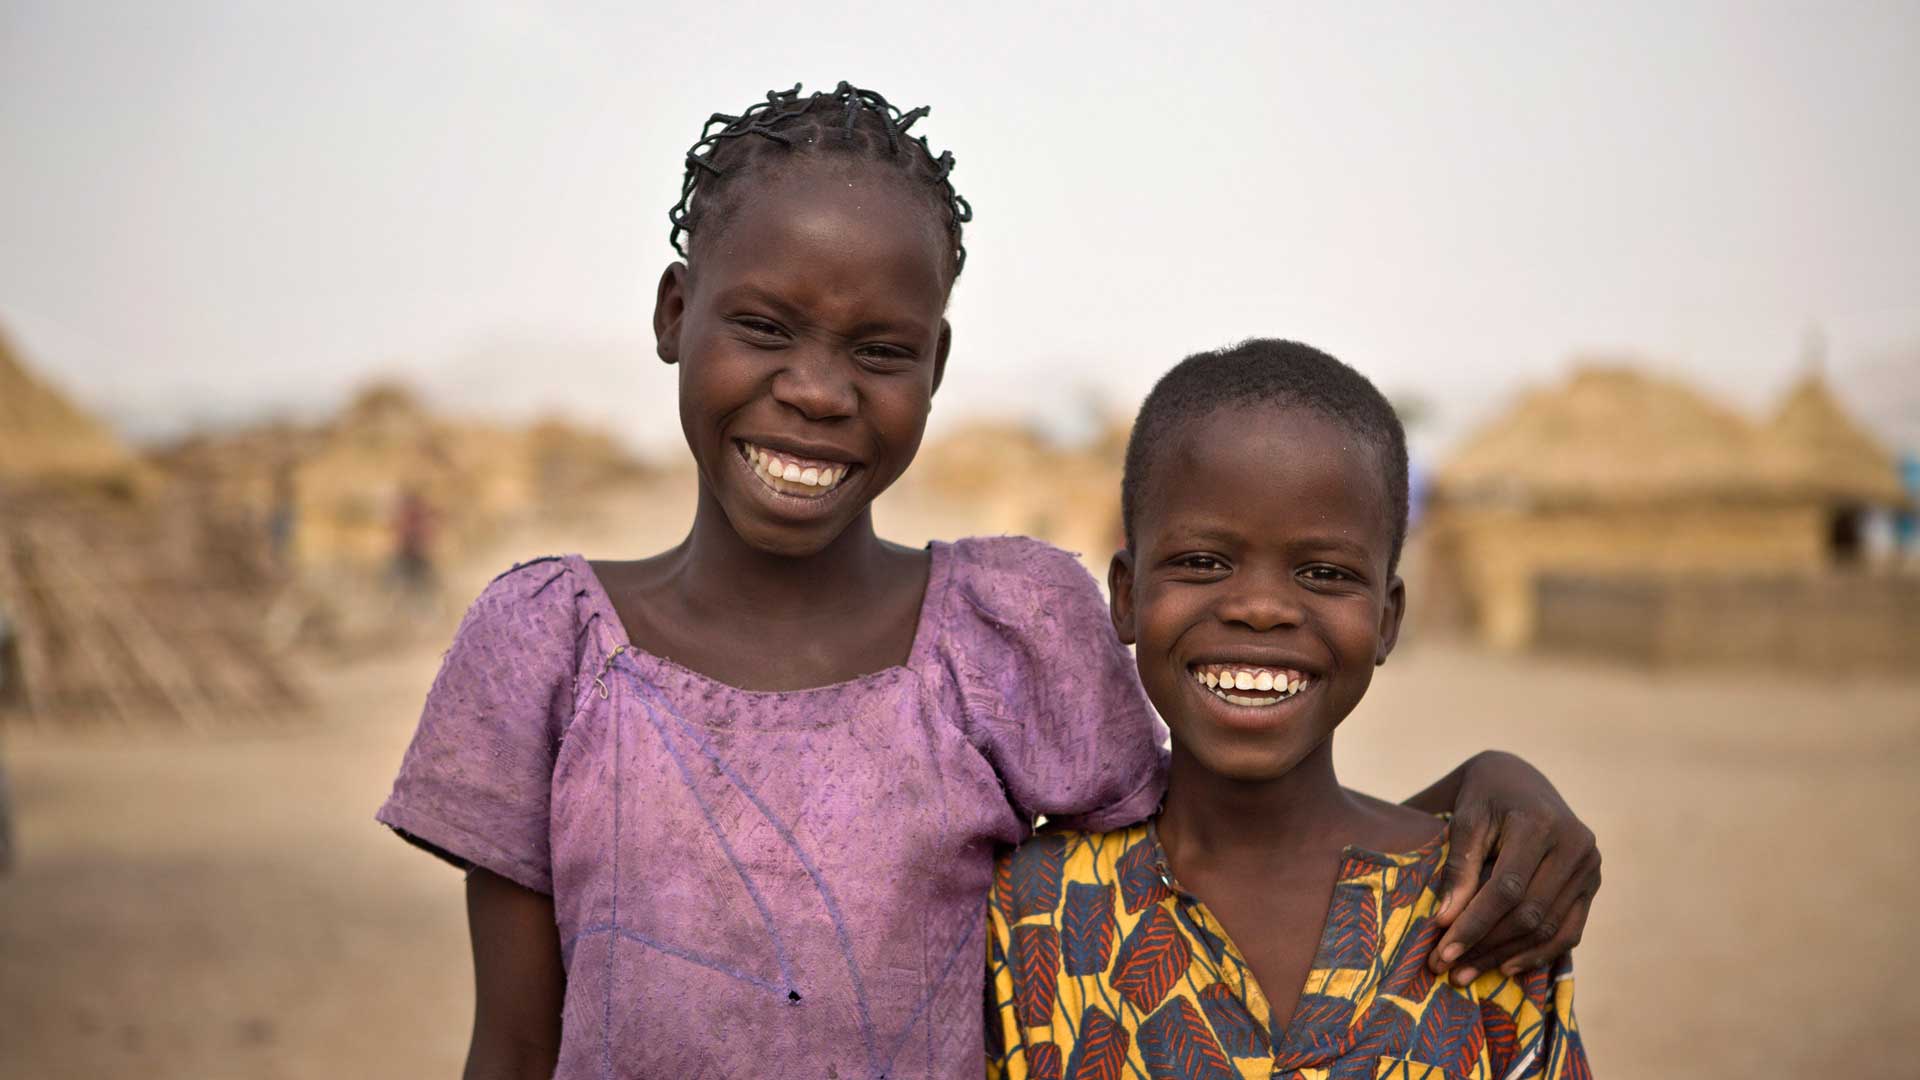 Junge und Mädchen, Ibrahim aus Nigeria RF217380_1920x1080.jpg